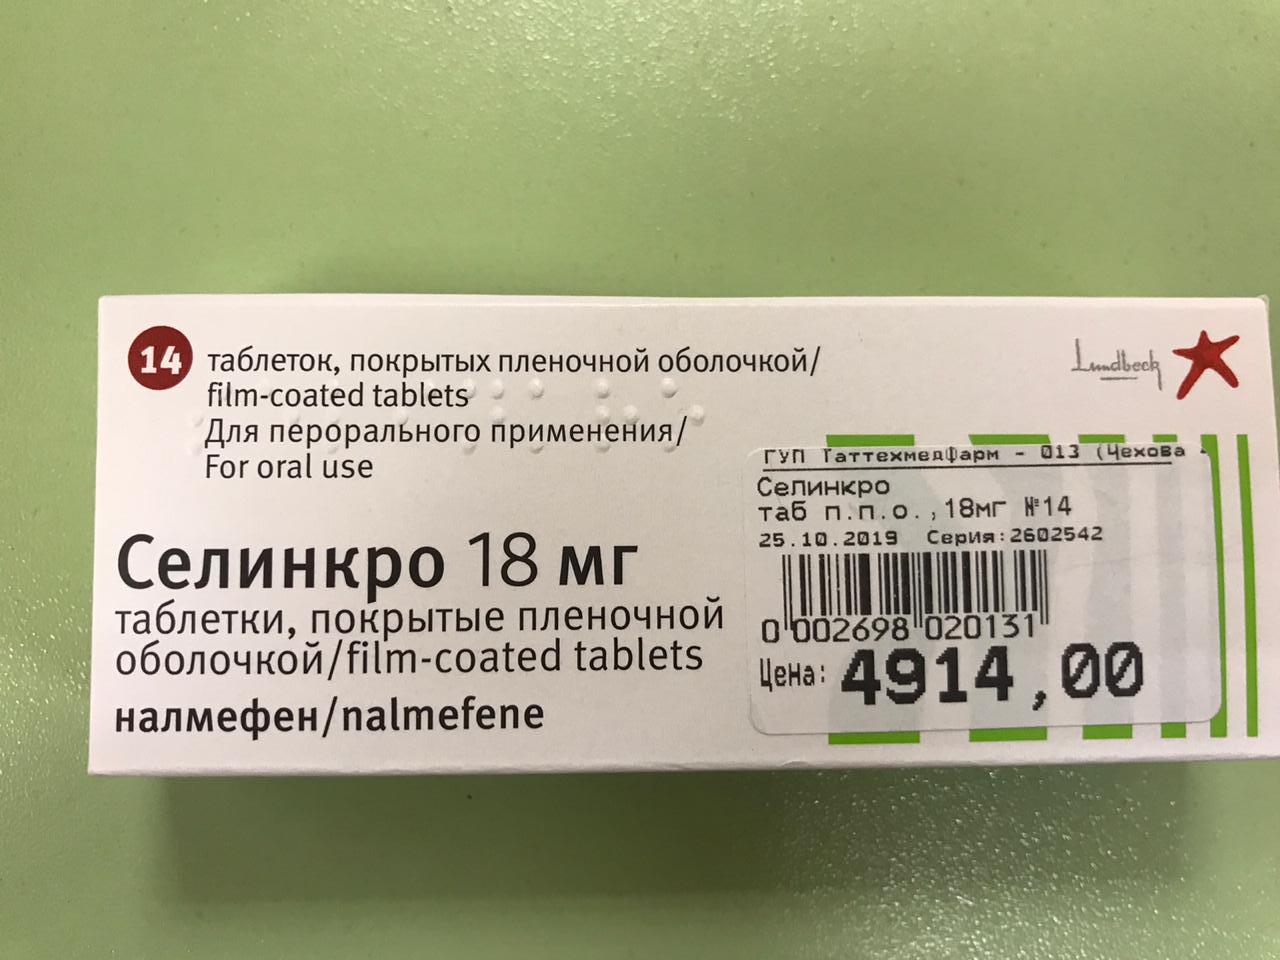 Селинкро - пример аптечной цены